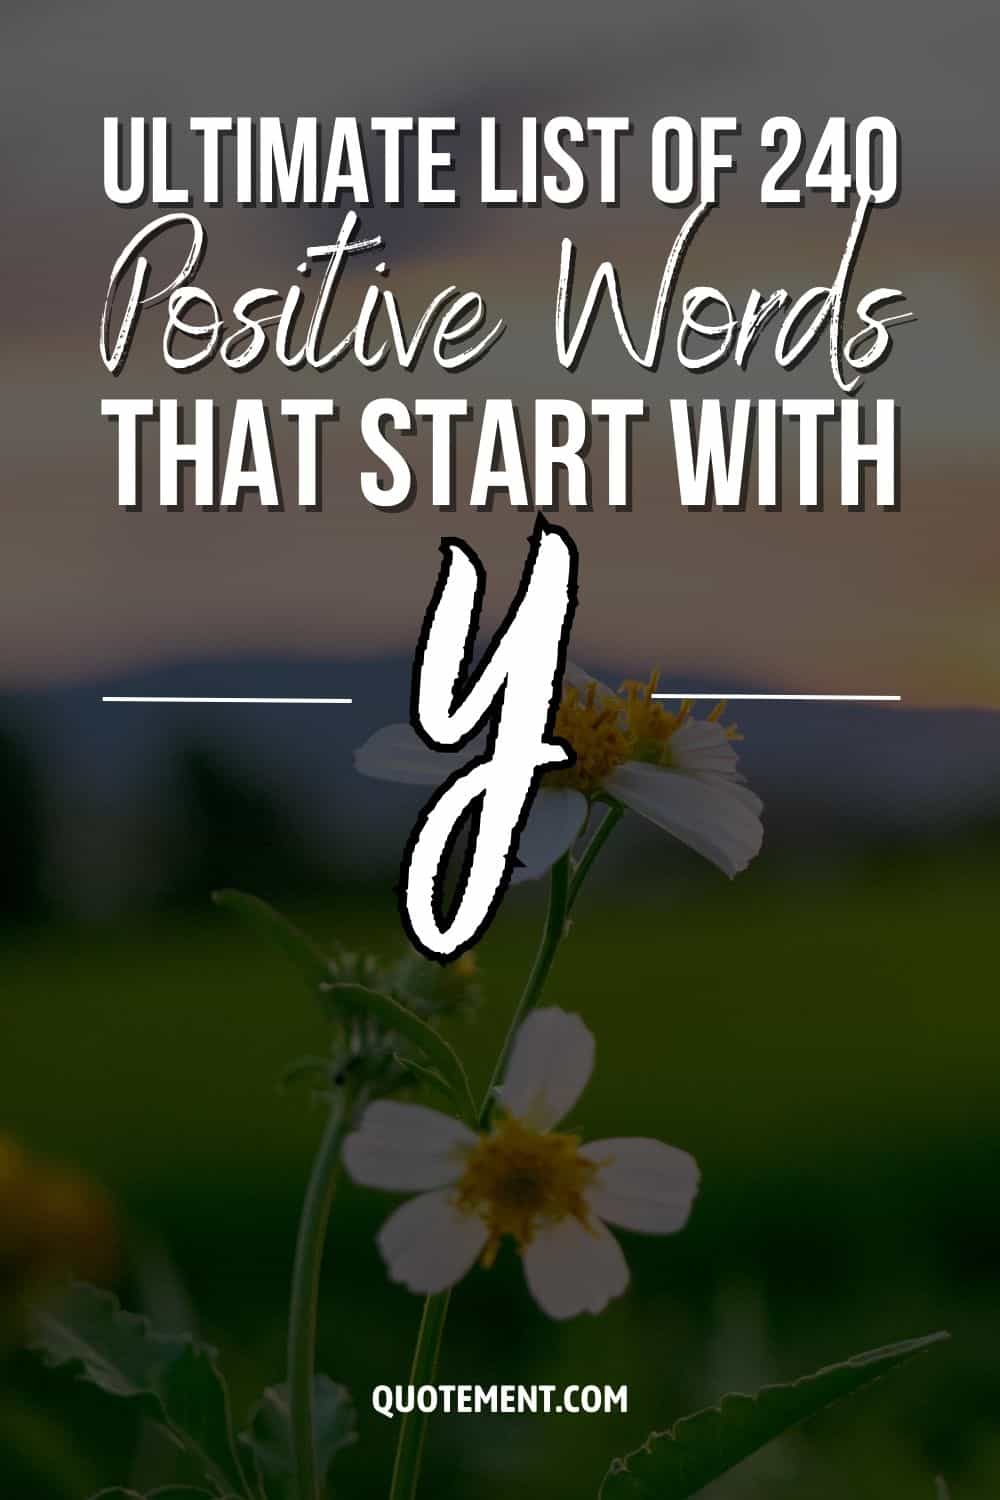 Lista definitiva de 240 palabras positivas que empiezan por Y